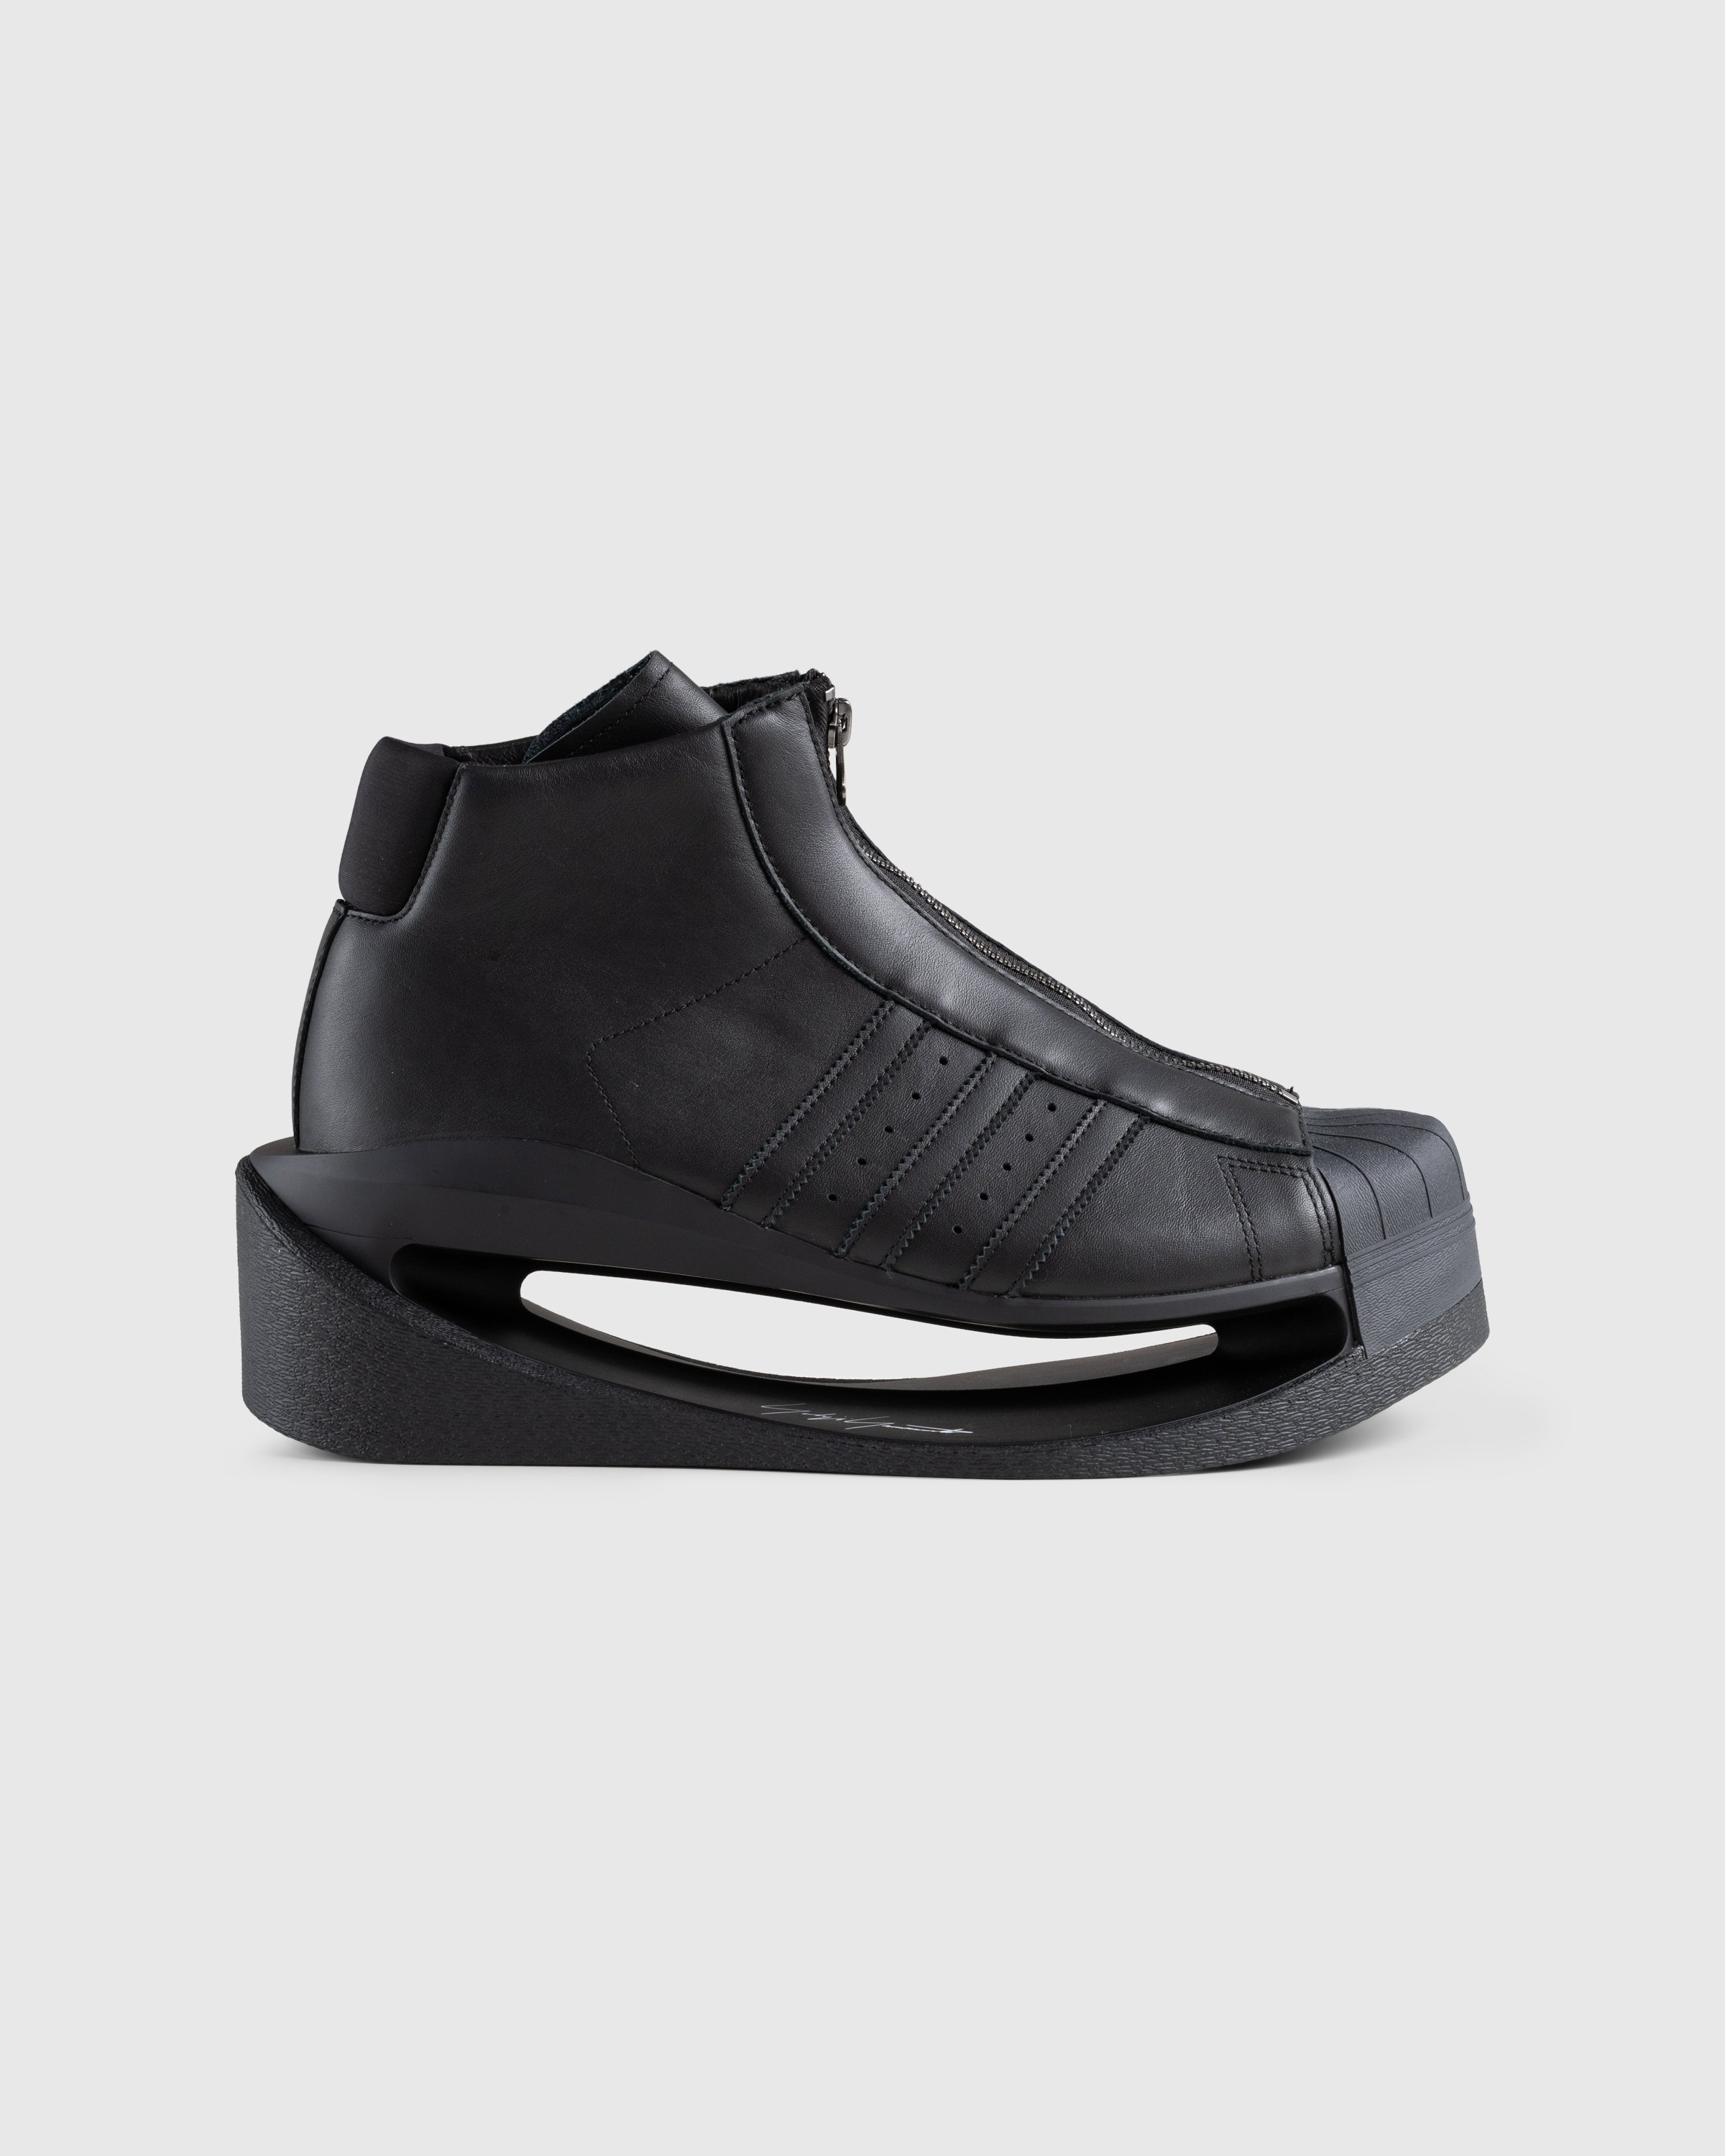 Y-3 - Gendo Pro Model Black - Footwear - Black - Image 1